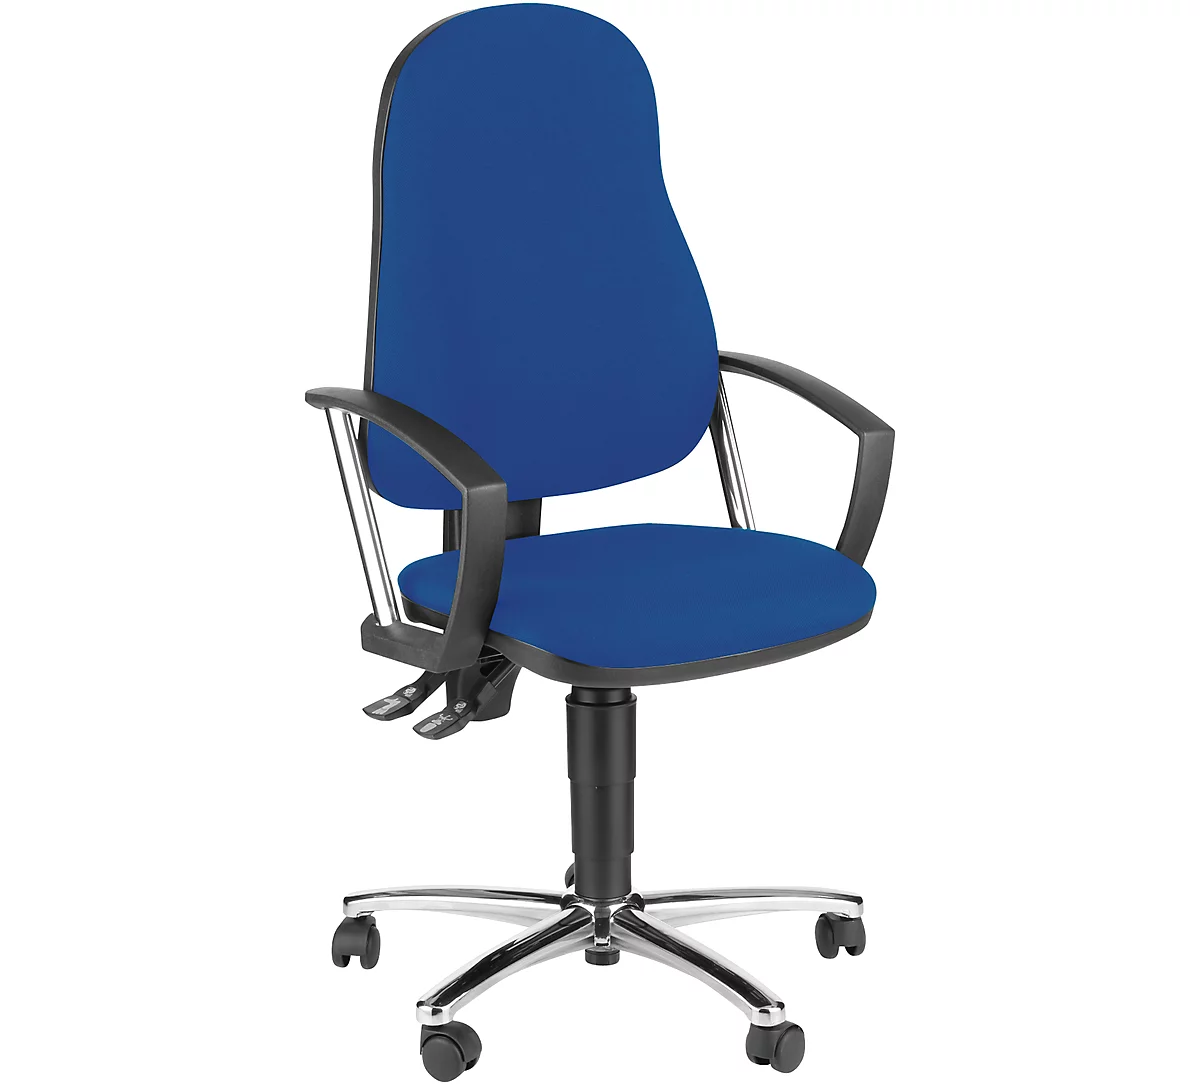 Silla de oficina Topstar POINT 60, mecanismo permanente, con reposabrazos, soporte lumbar, asiento contorneado, azul